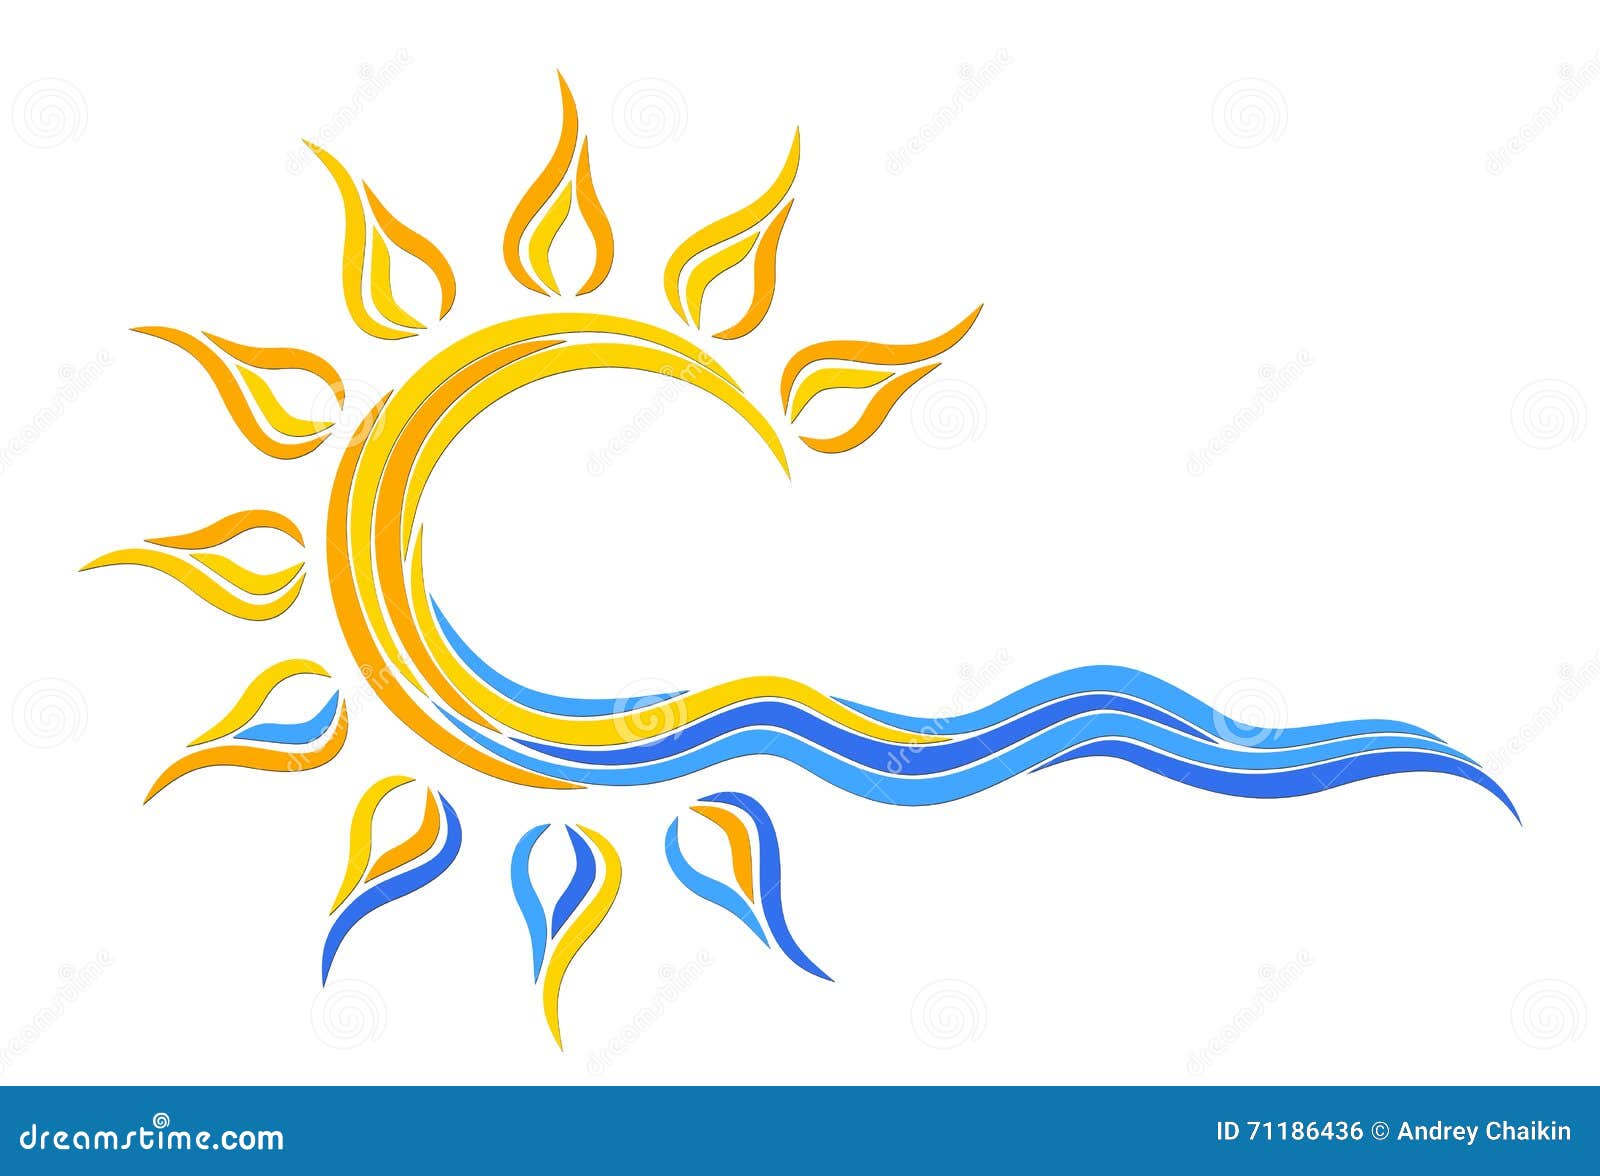 sun logo in the sea.